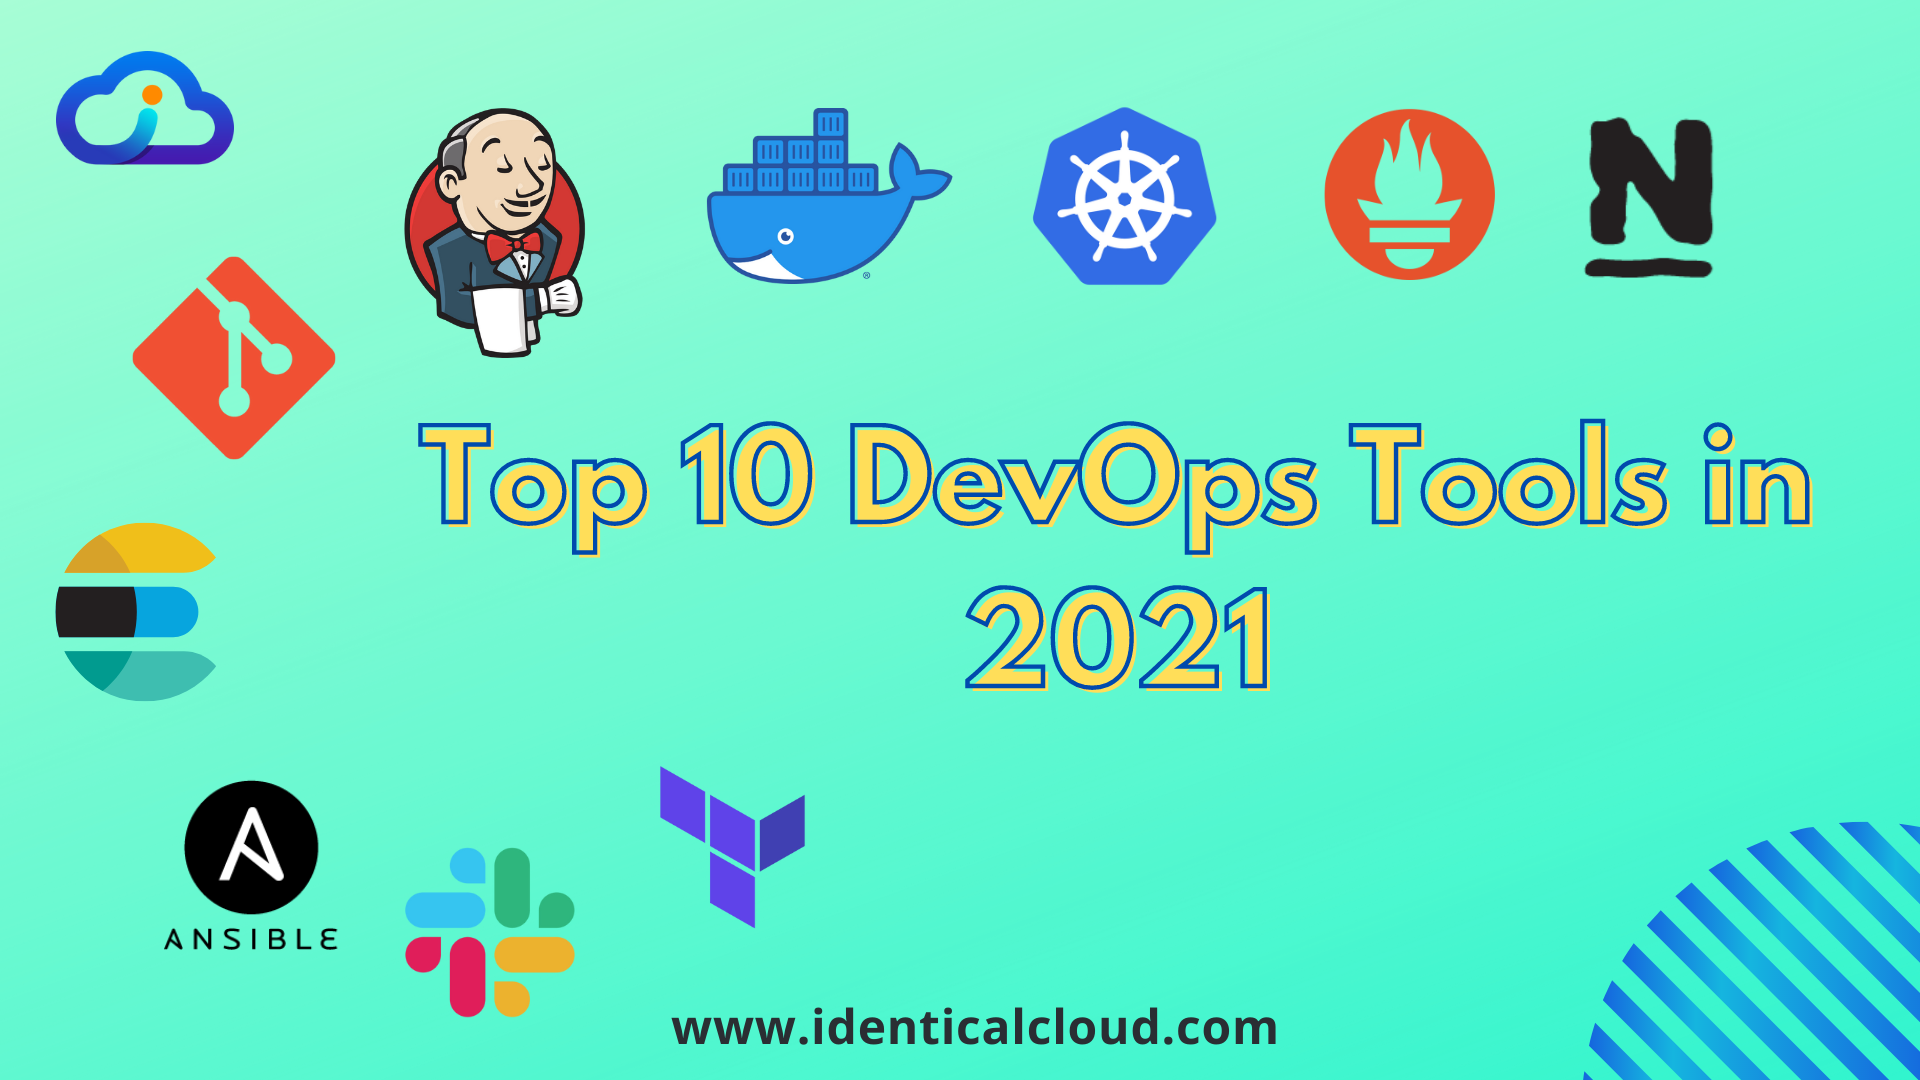 Top 10 DevOps tools in 2021 - IdenticalCloud